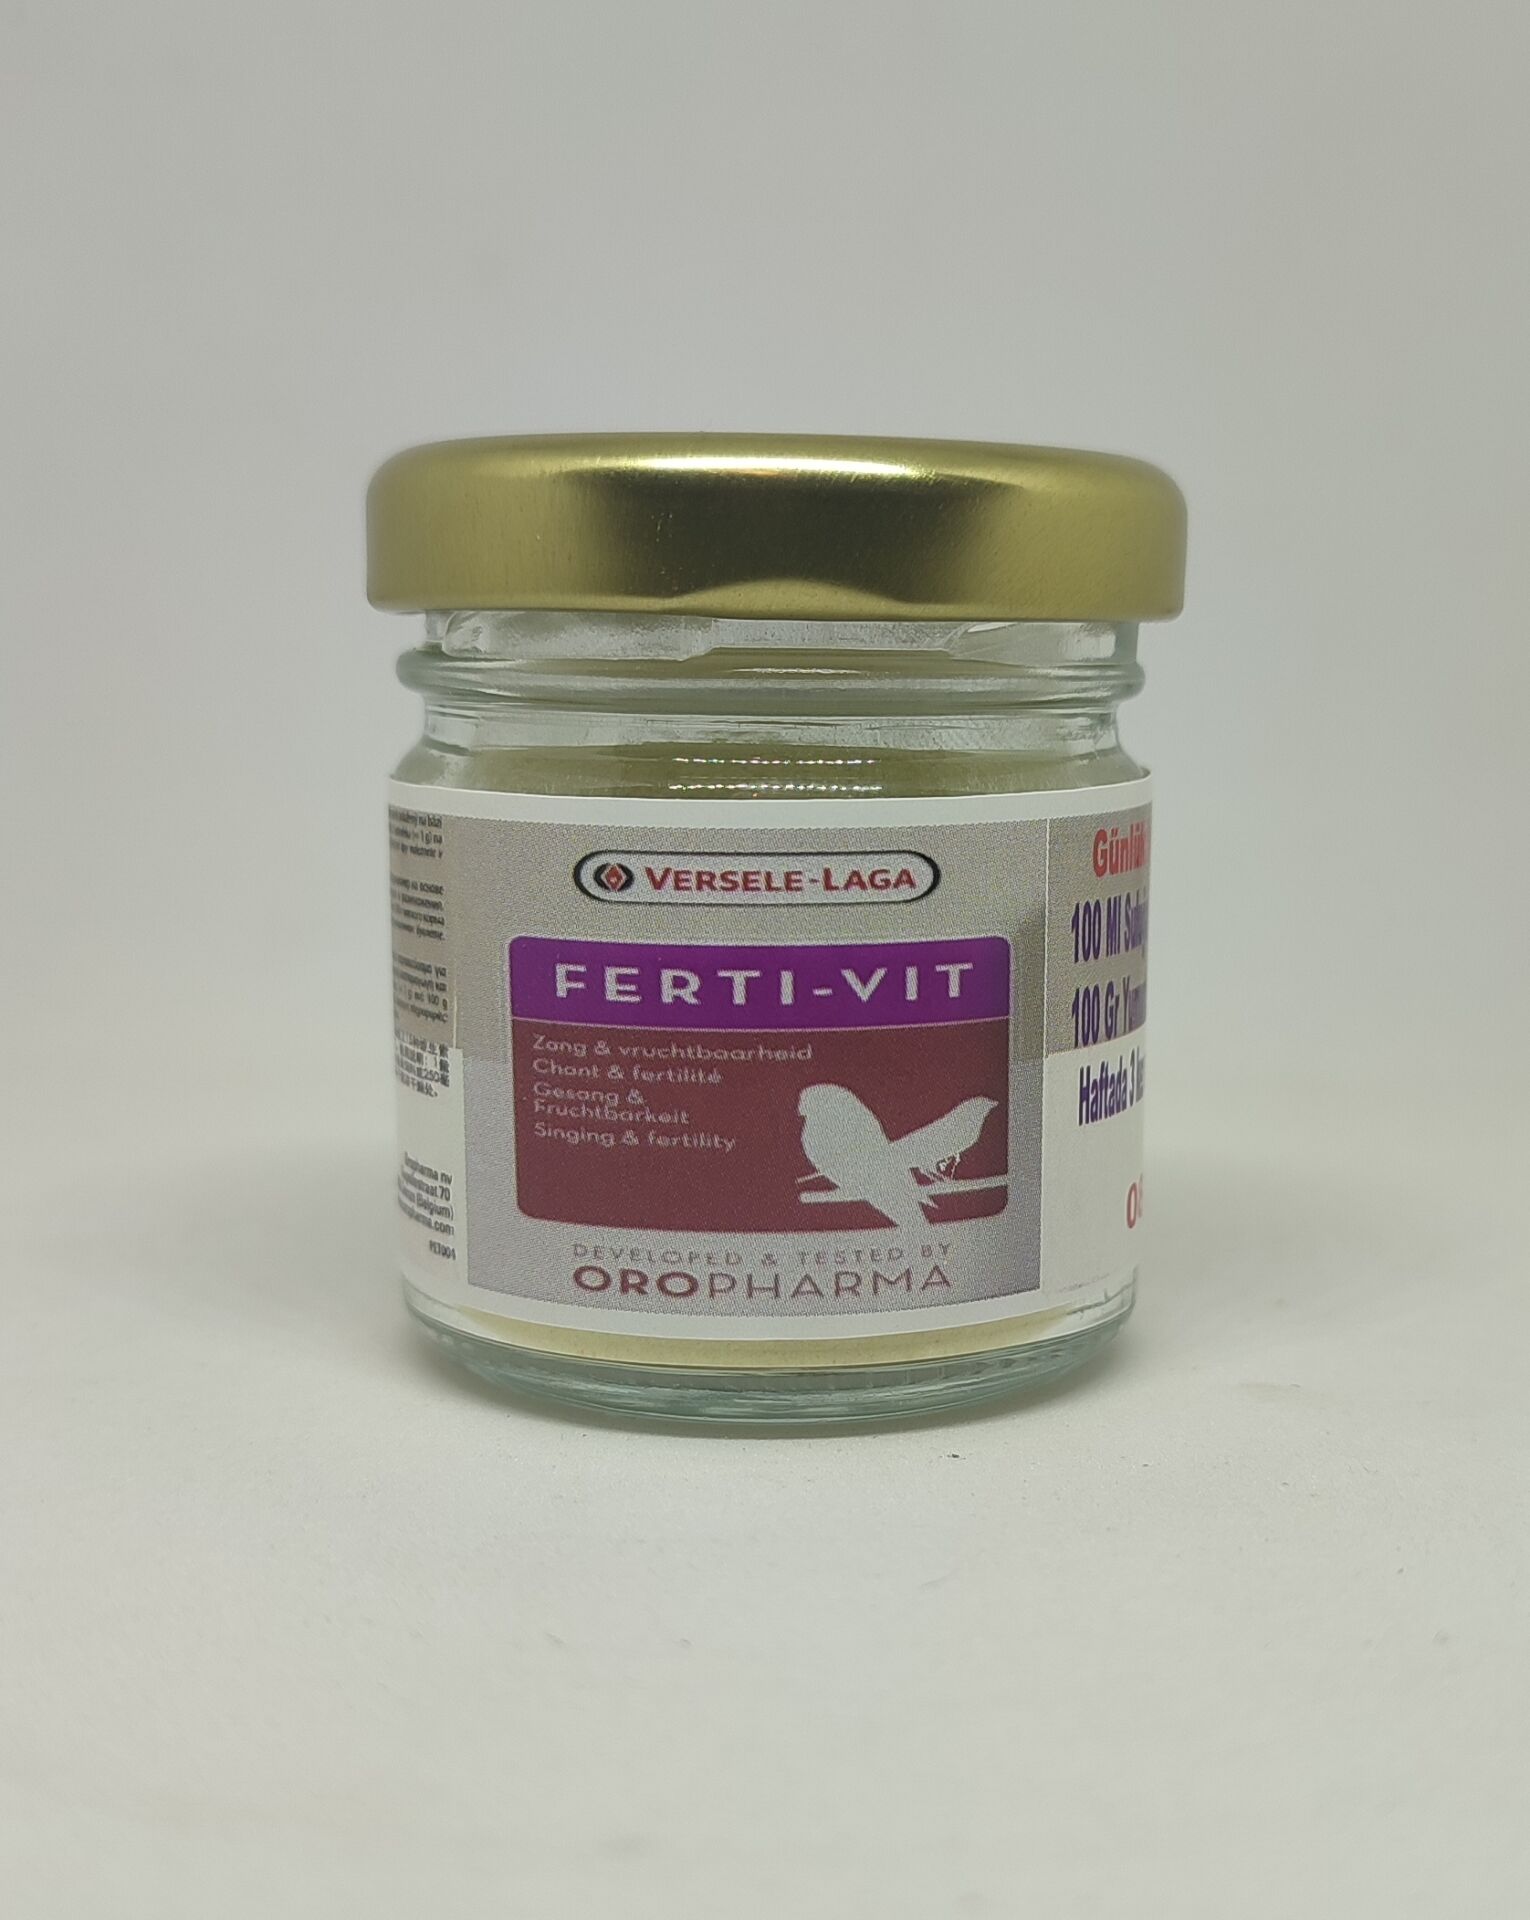 Versele Laga Fertivit Üreme Arttırıcı Kuş  Vitamini 25 GR (Bölünmüş)